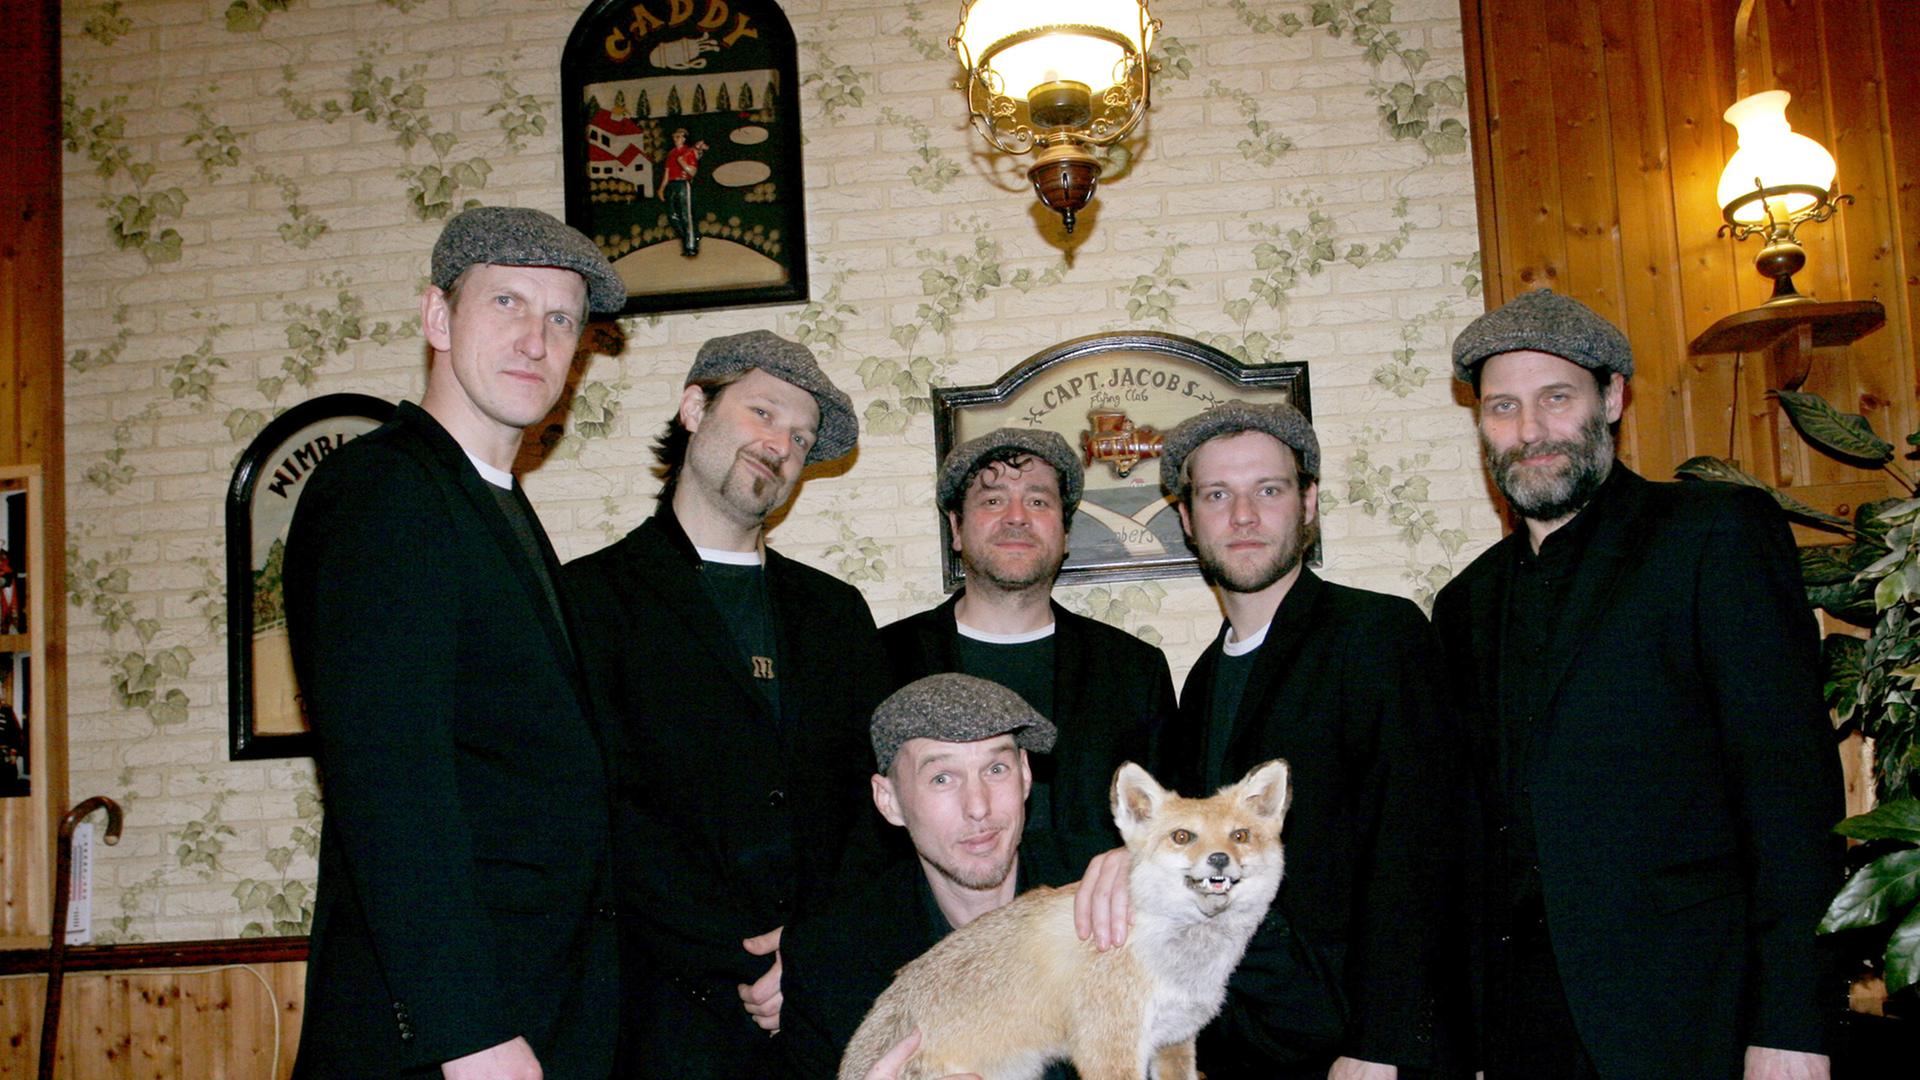 Die Mitglieder der Band "Jazzkantine" stehen zusammen in schwarzen Anzügen. Einer kniet in der Mitte und hält einen ausgestopften Wolf in den Händen. 